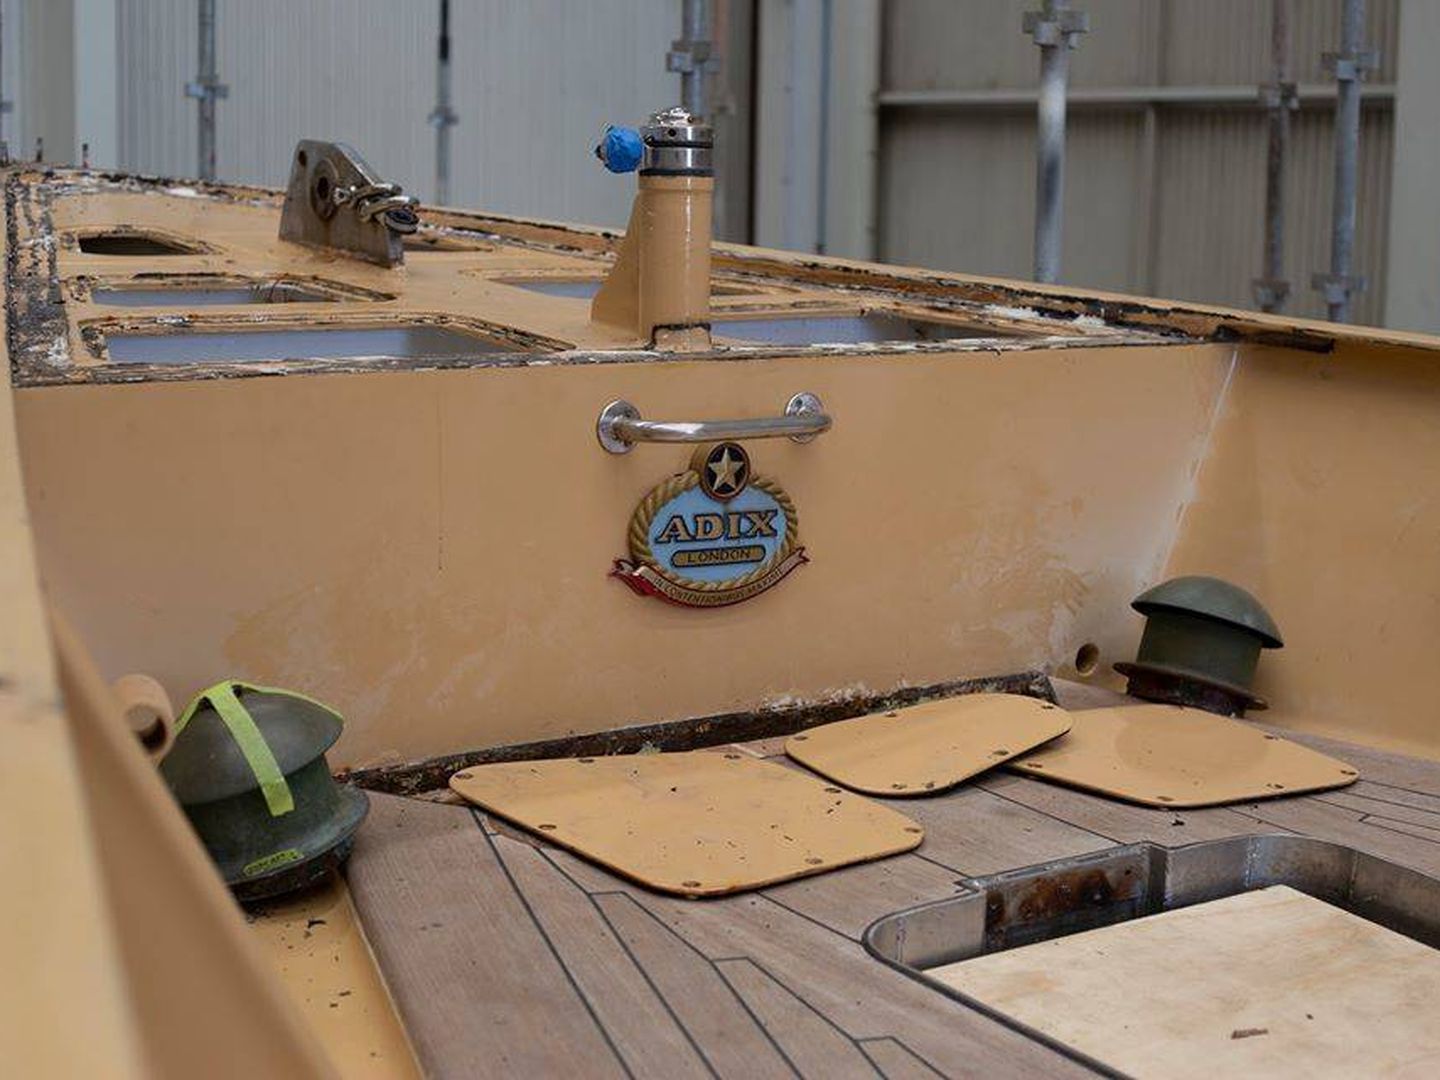 Cubierta de la goleta, en plenos trabajos de restauración en un astillero australiano. (The Yard Brisbane)